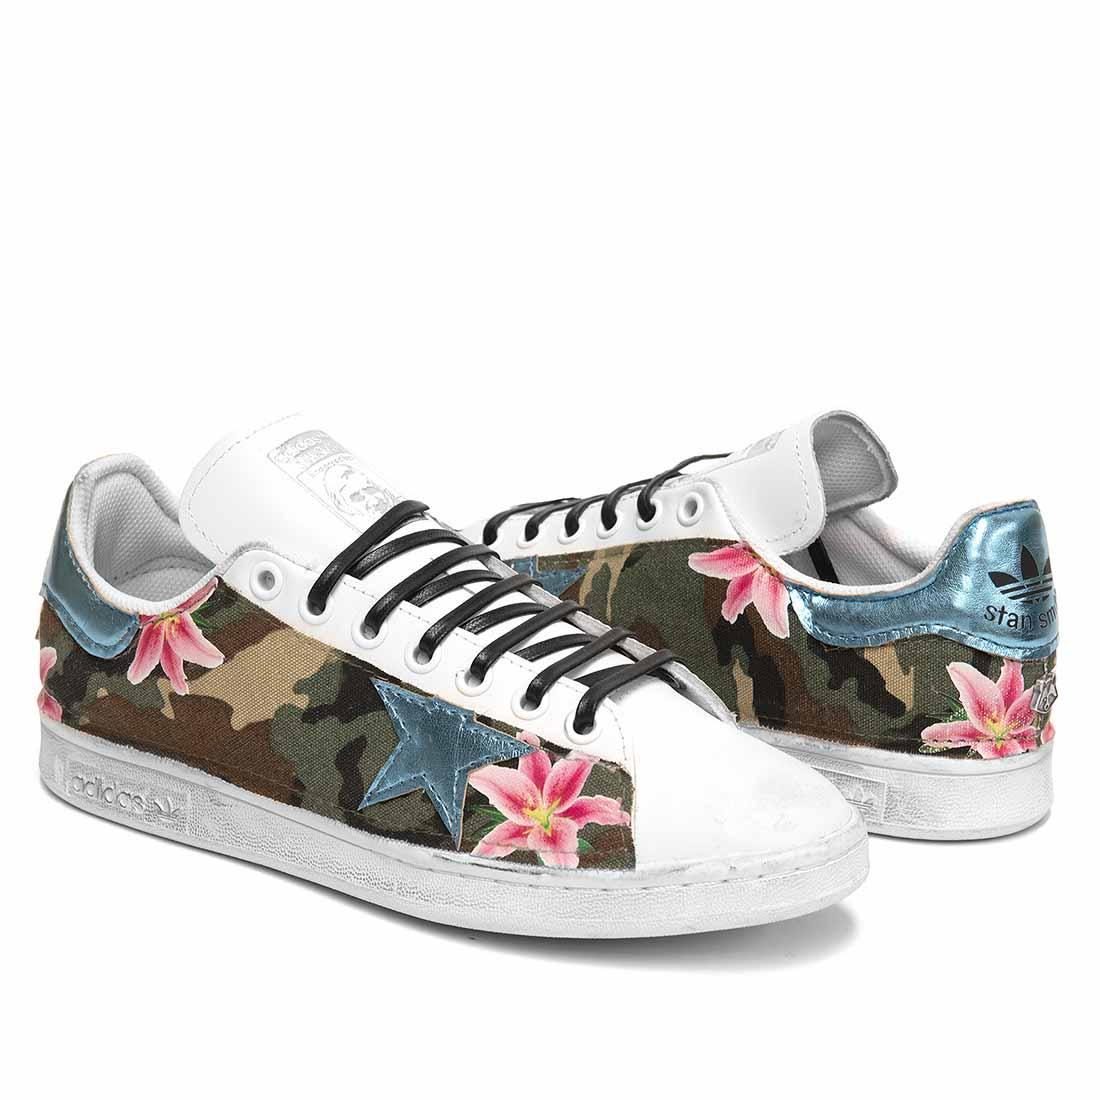 adidas personalizzate con camouflage fiori e stelle azzurro reflex